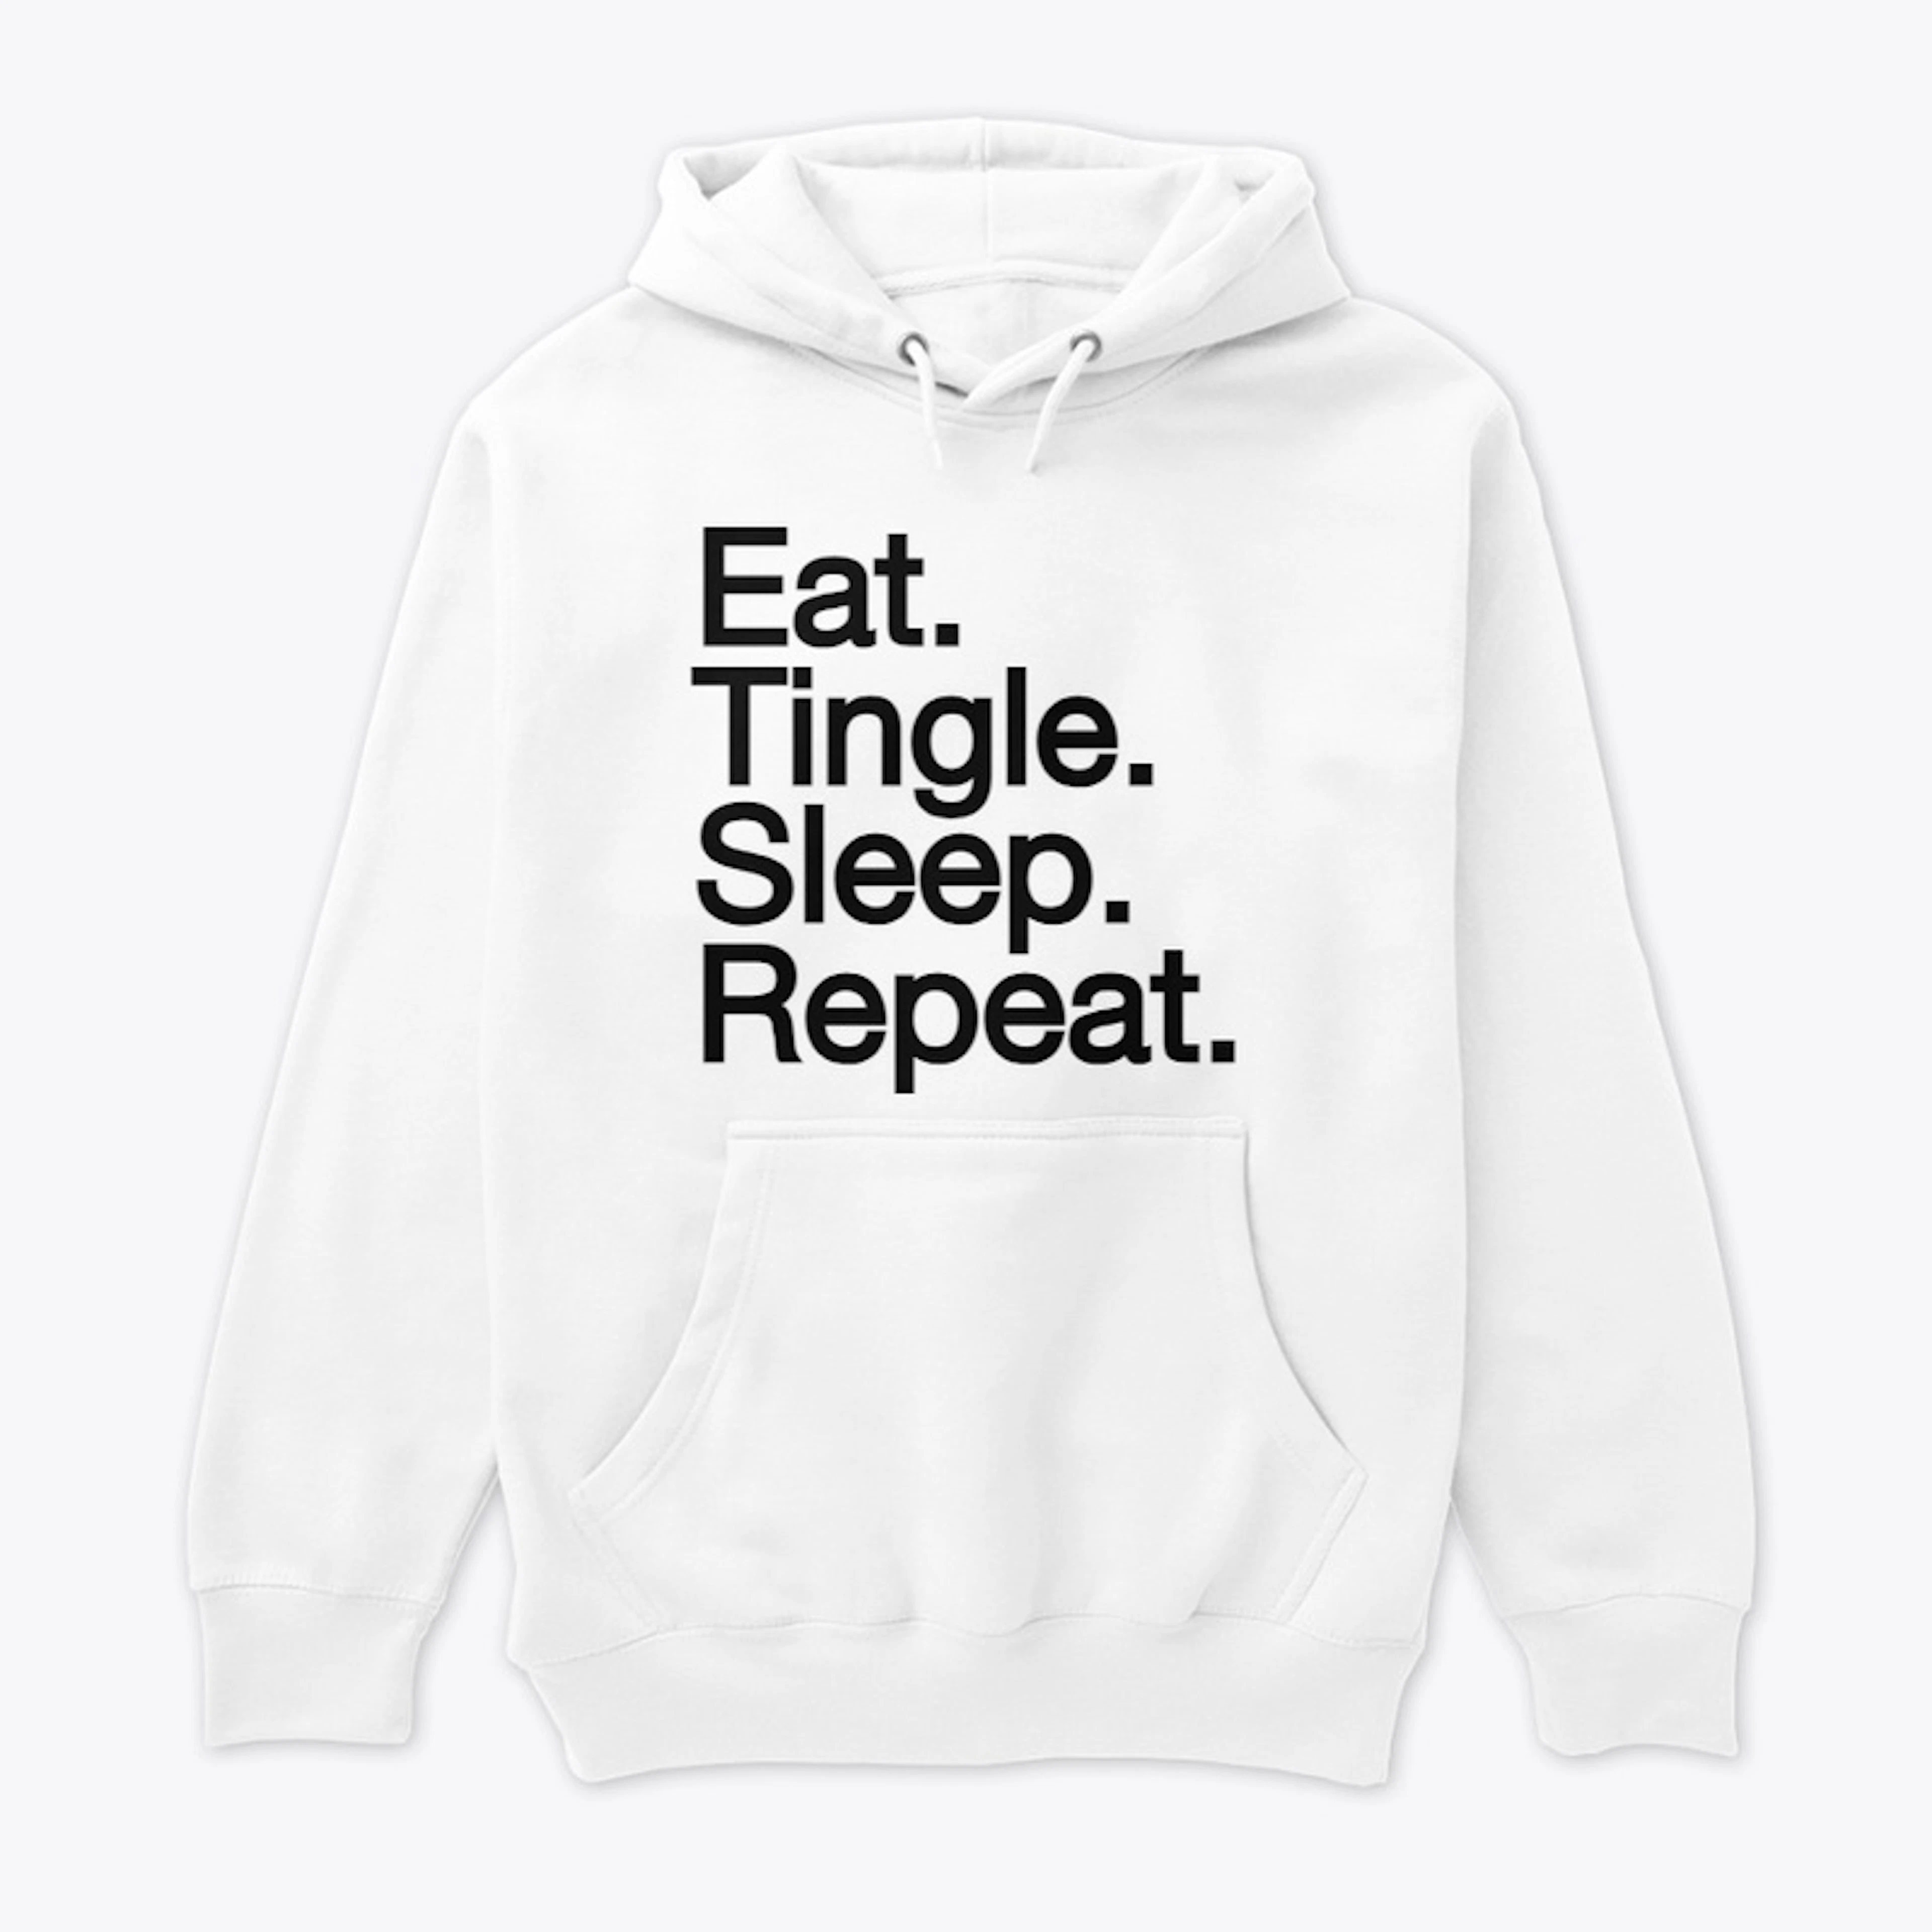 Eat. Tingle. Sleep. Repeat.